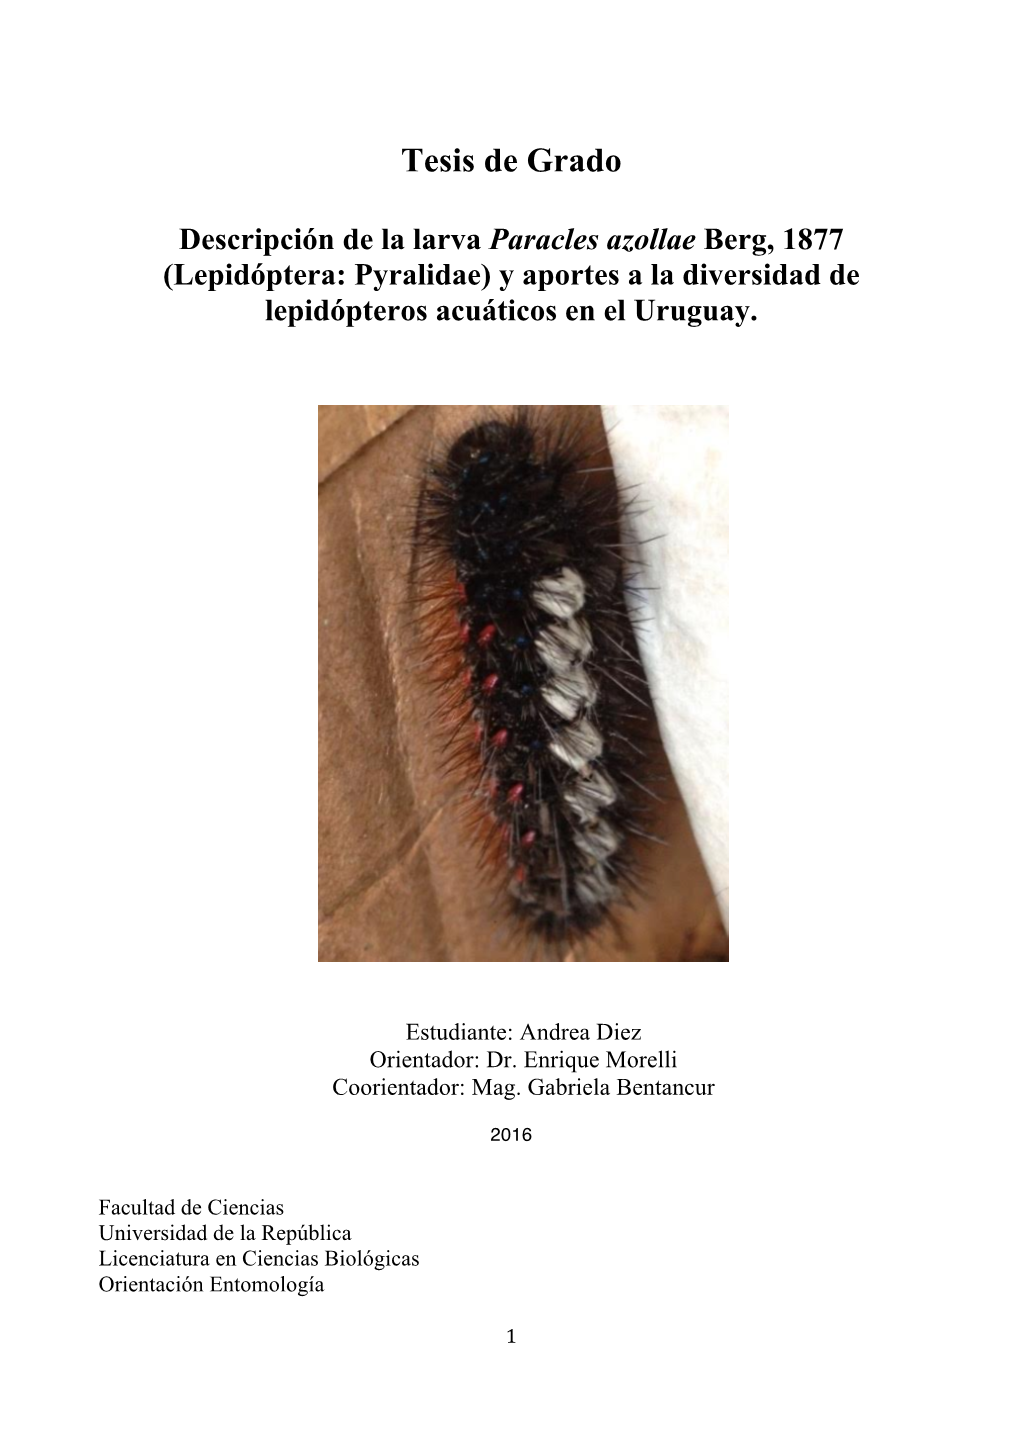 Lepidóptera: Pyralidae) Y Aportes a La Diversidad De Lepidópteros Acuáticos En El Uruguay